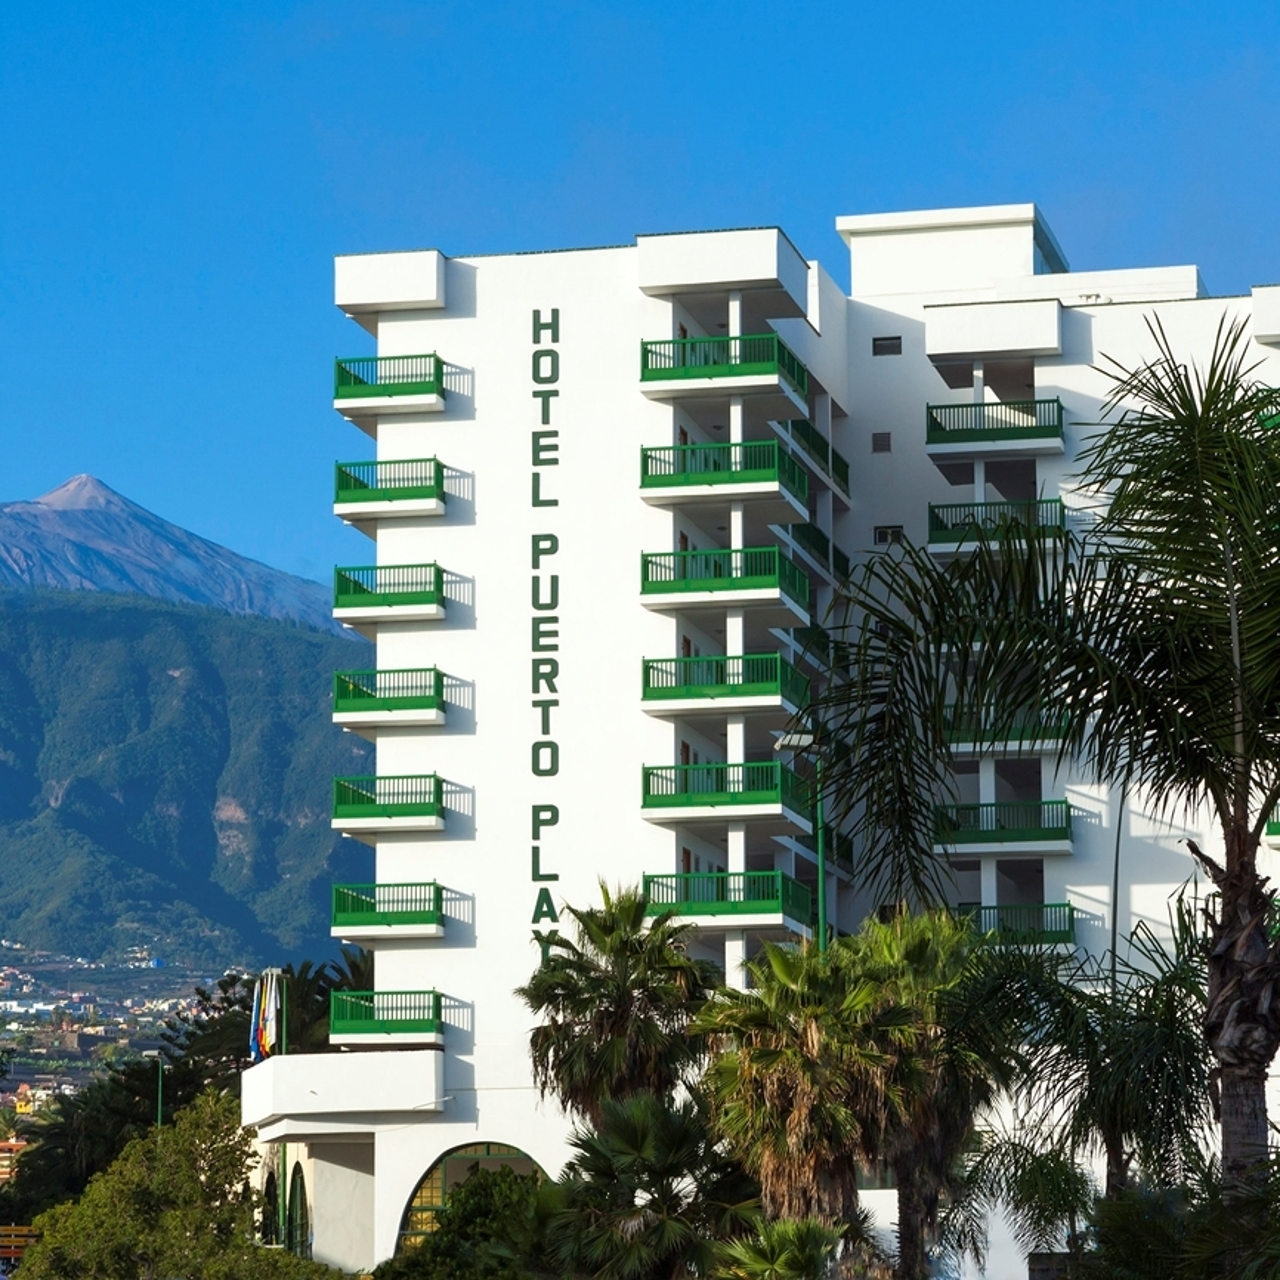 Hotel Sol Puerto de la Cruz Tenerife en HRS con servicios gratuitos